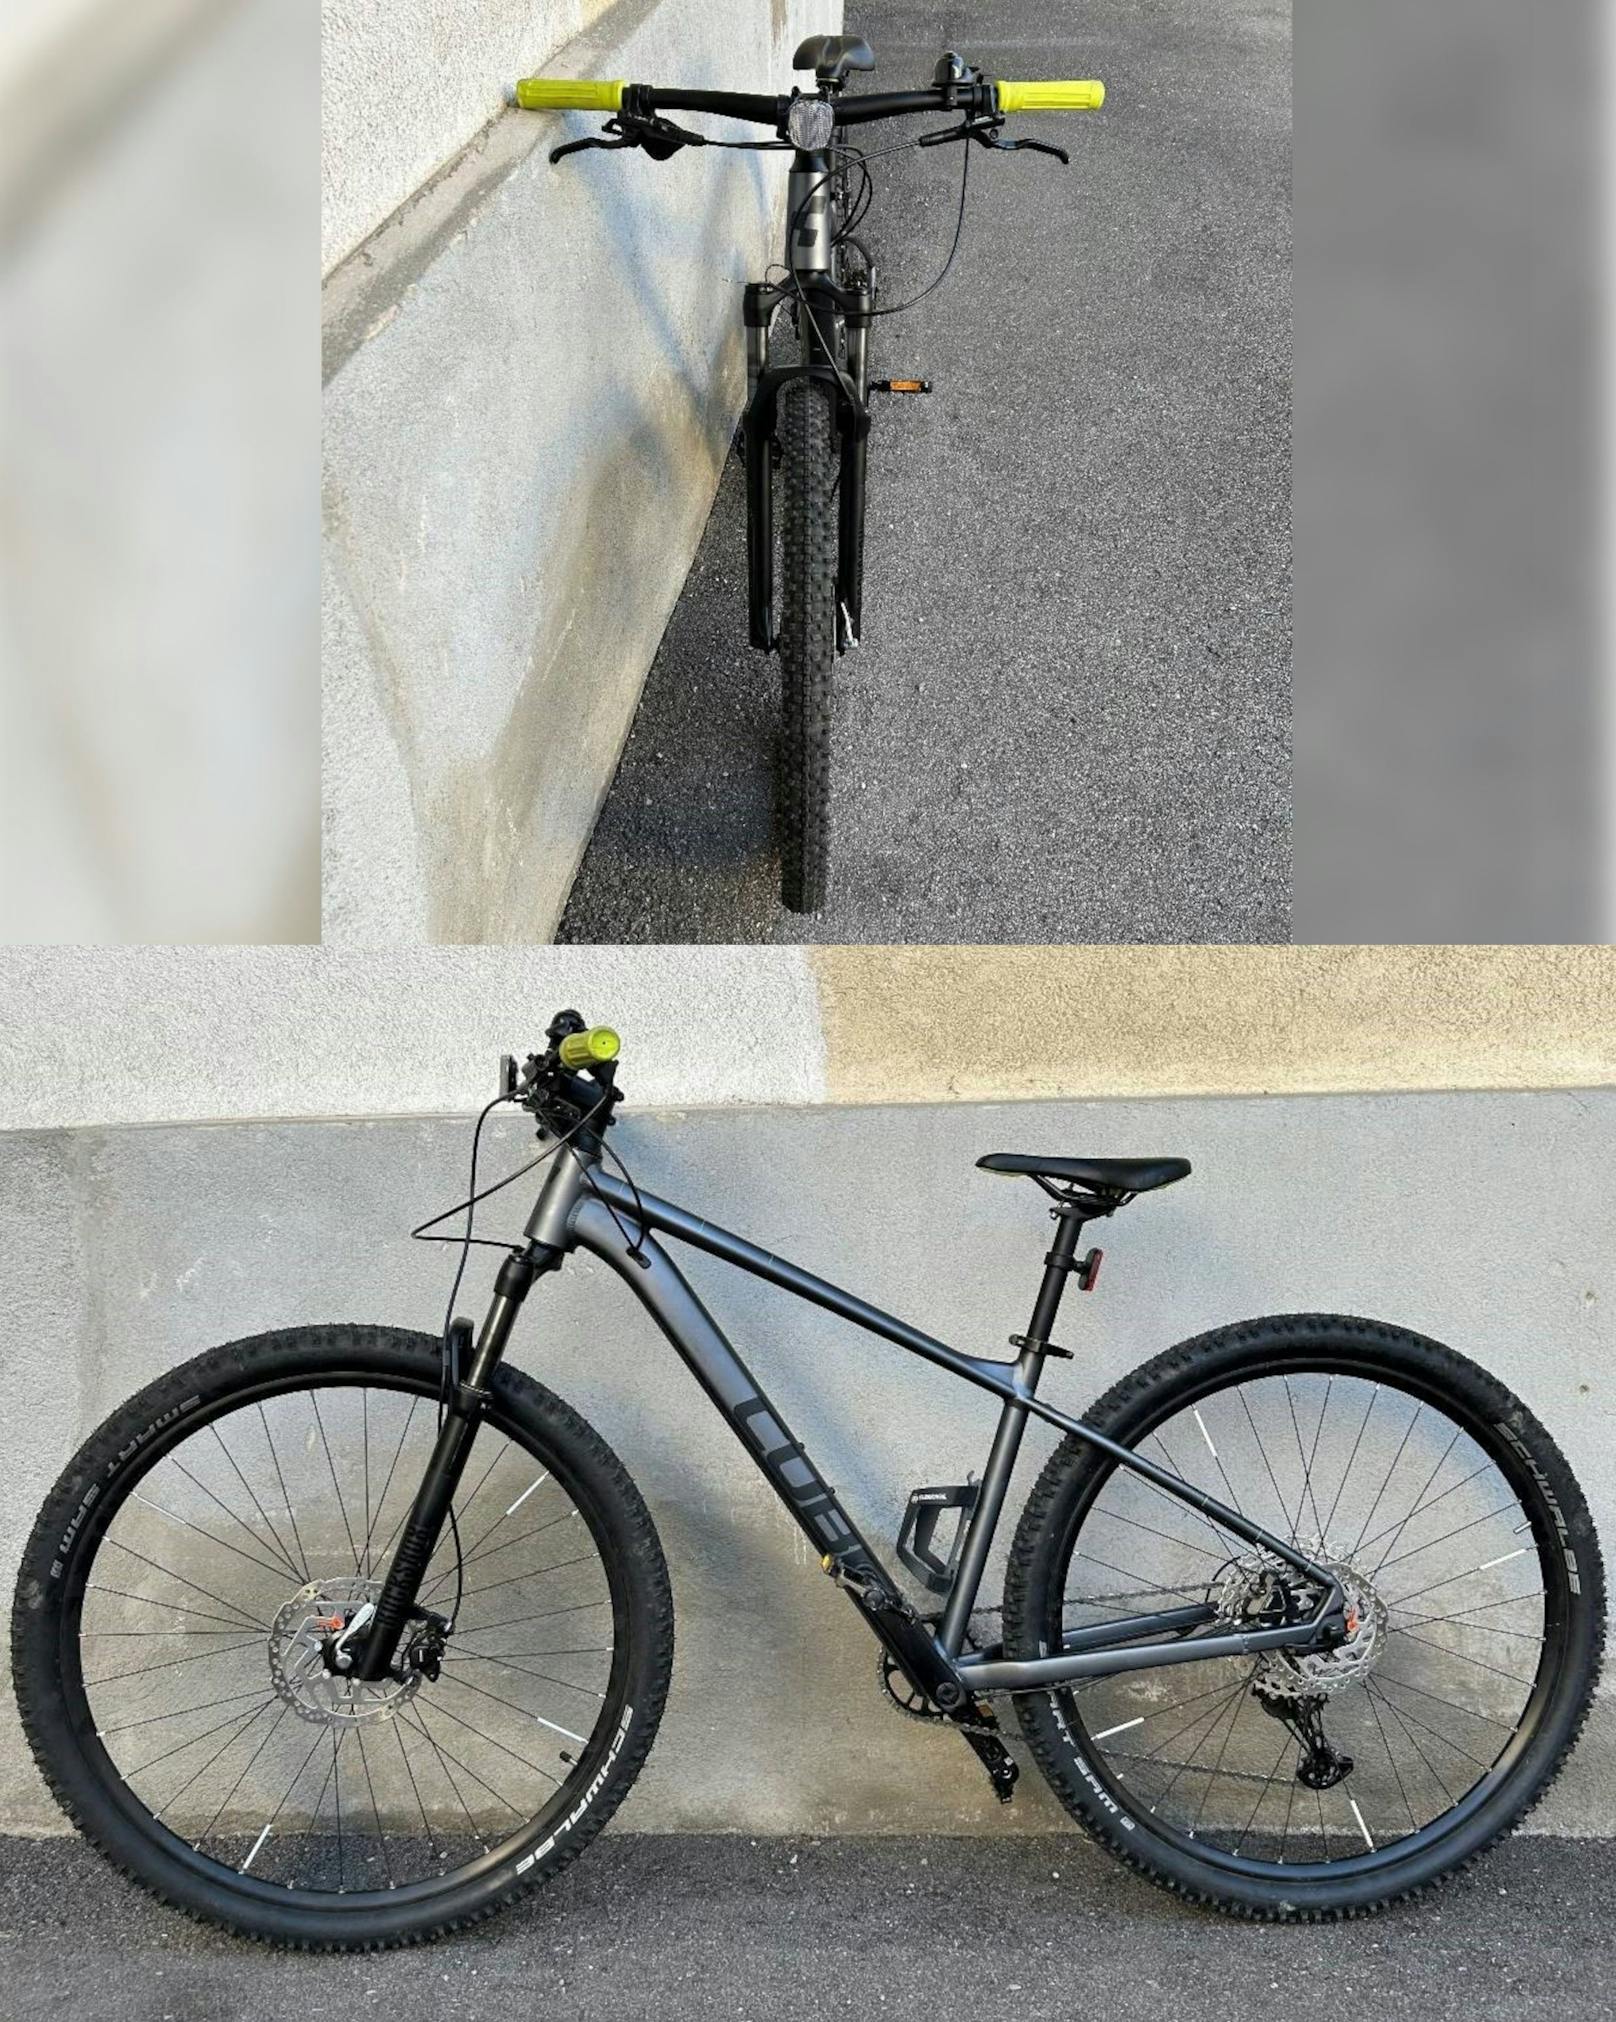 Die Polizei stellte dieses Rad sicher und sucht jetzt den Besitzer.